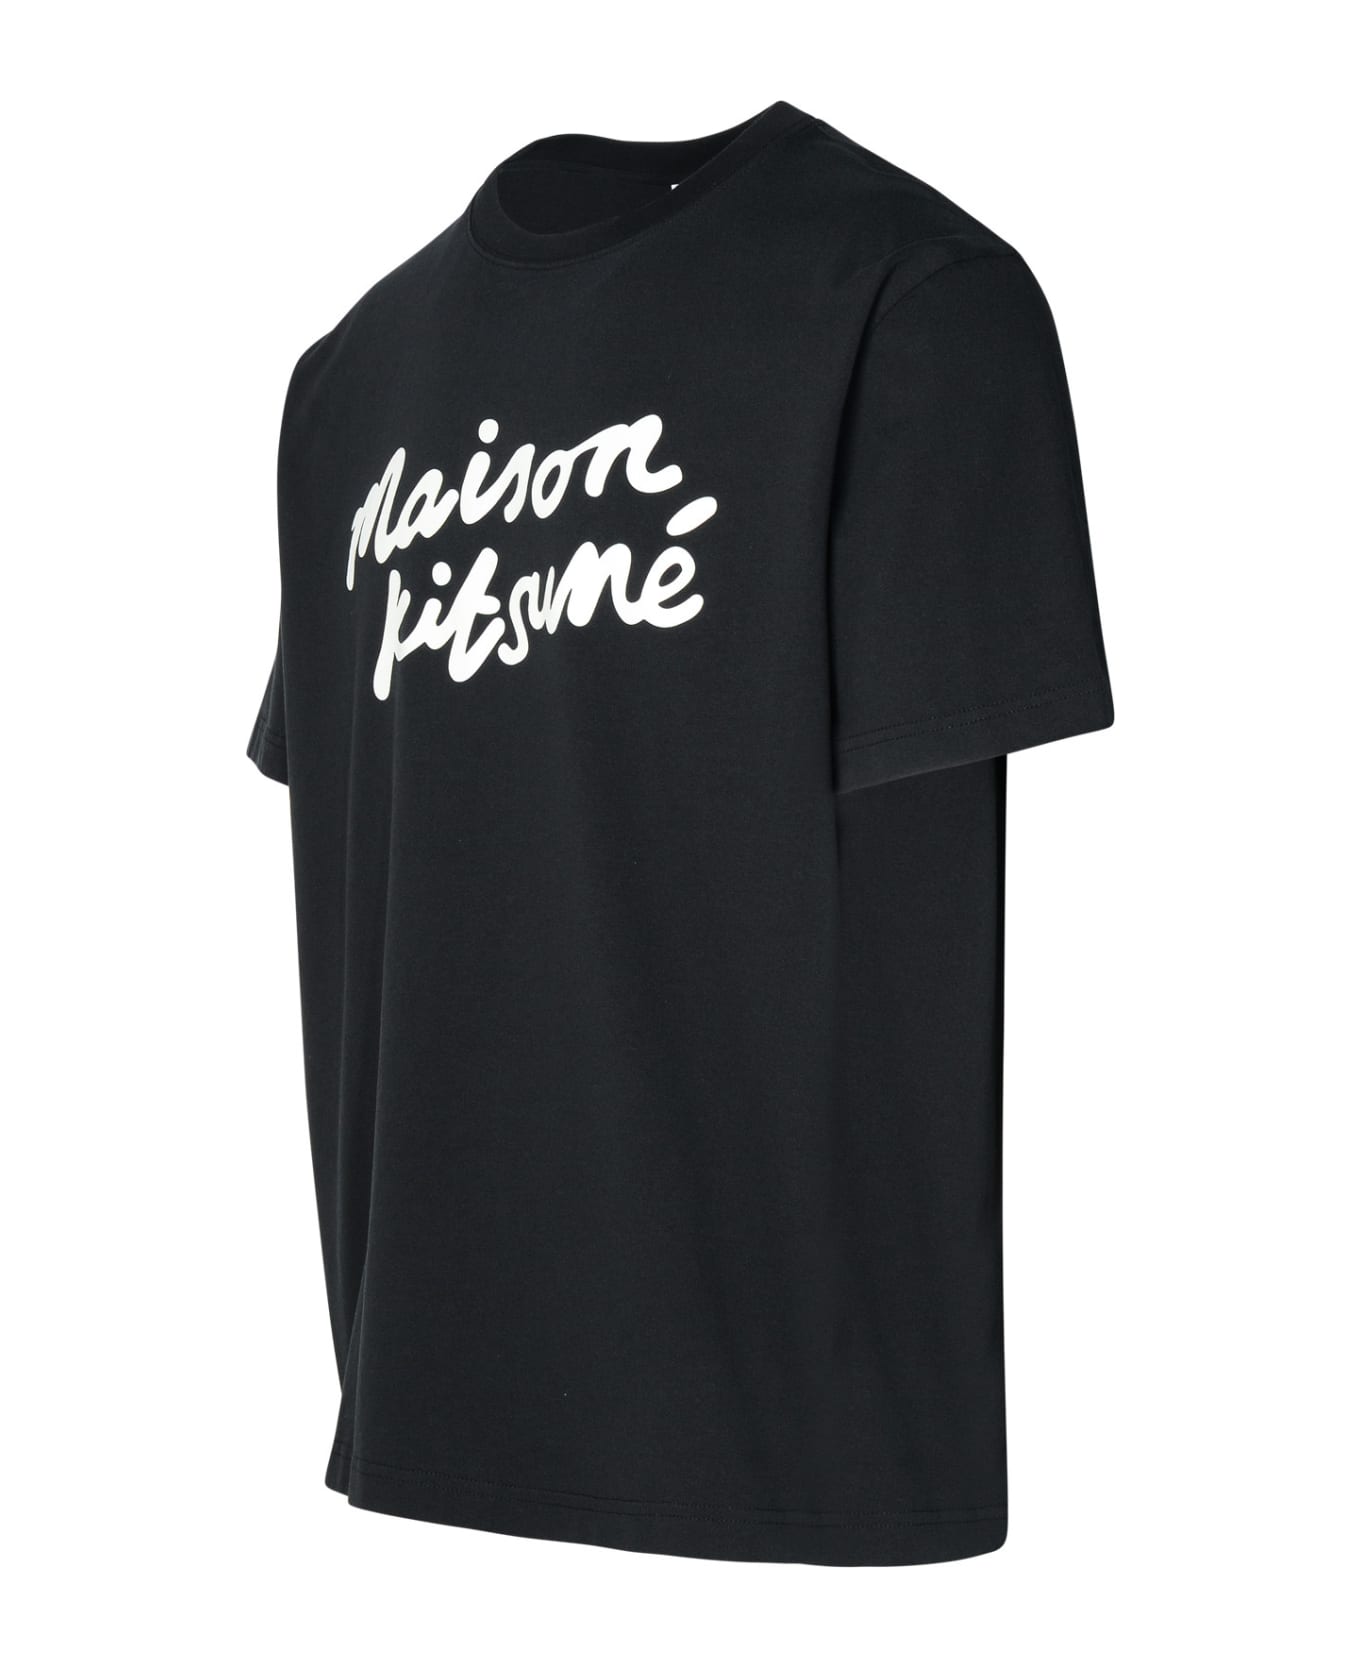 Maison Kitsuné Black Cotton T-shirt - Black White